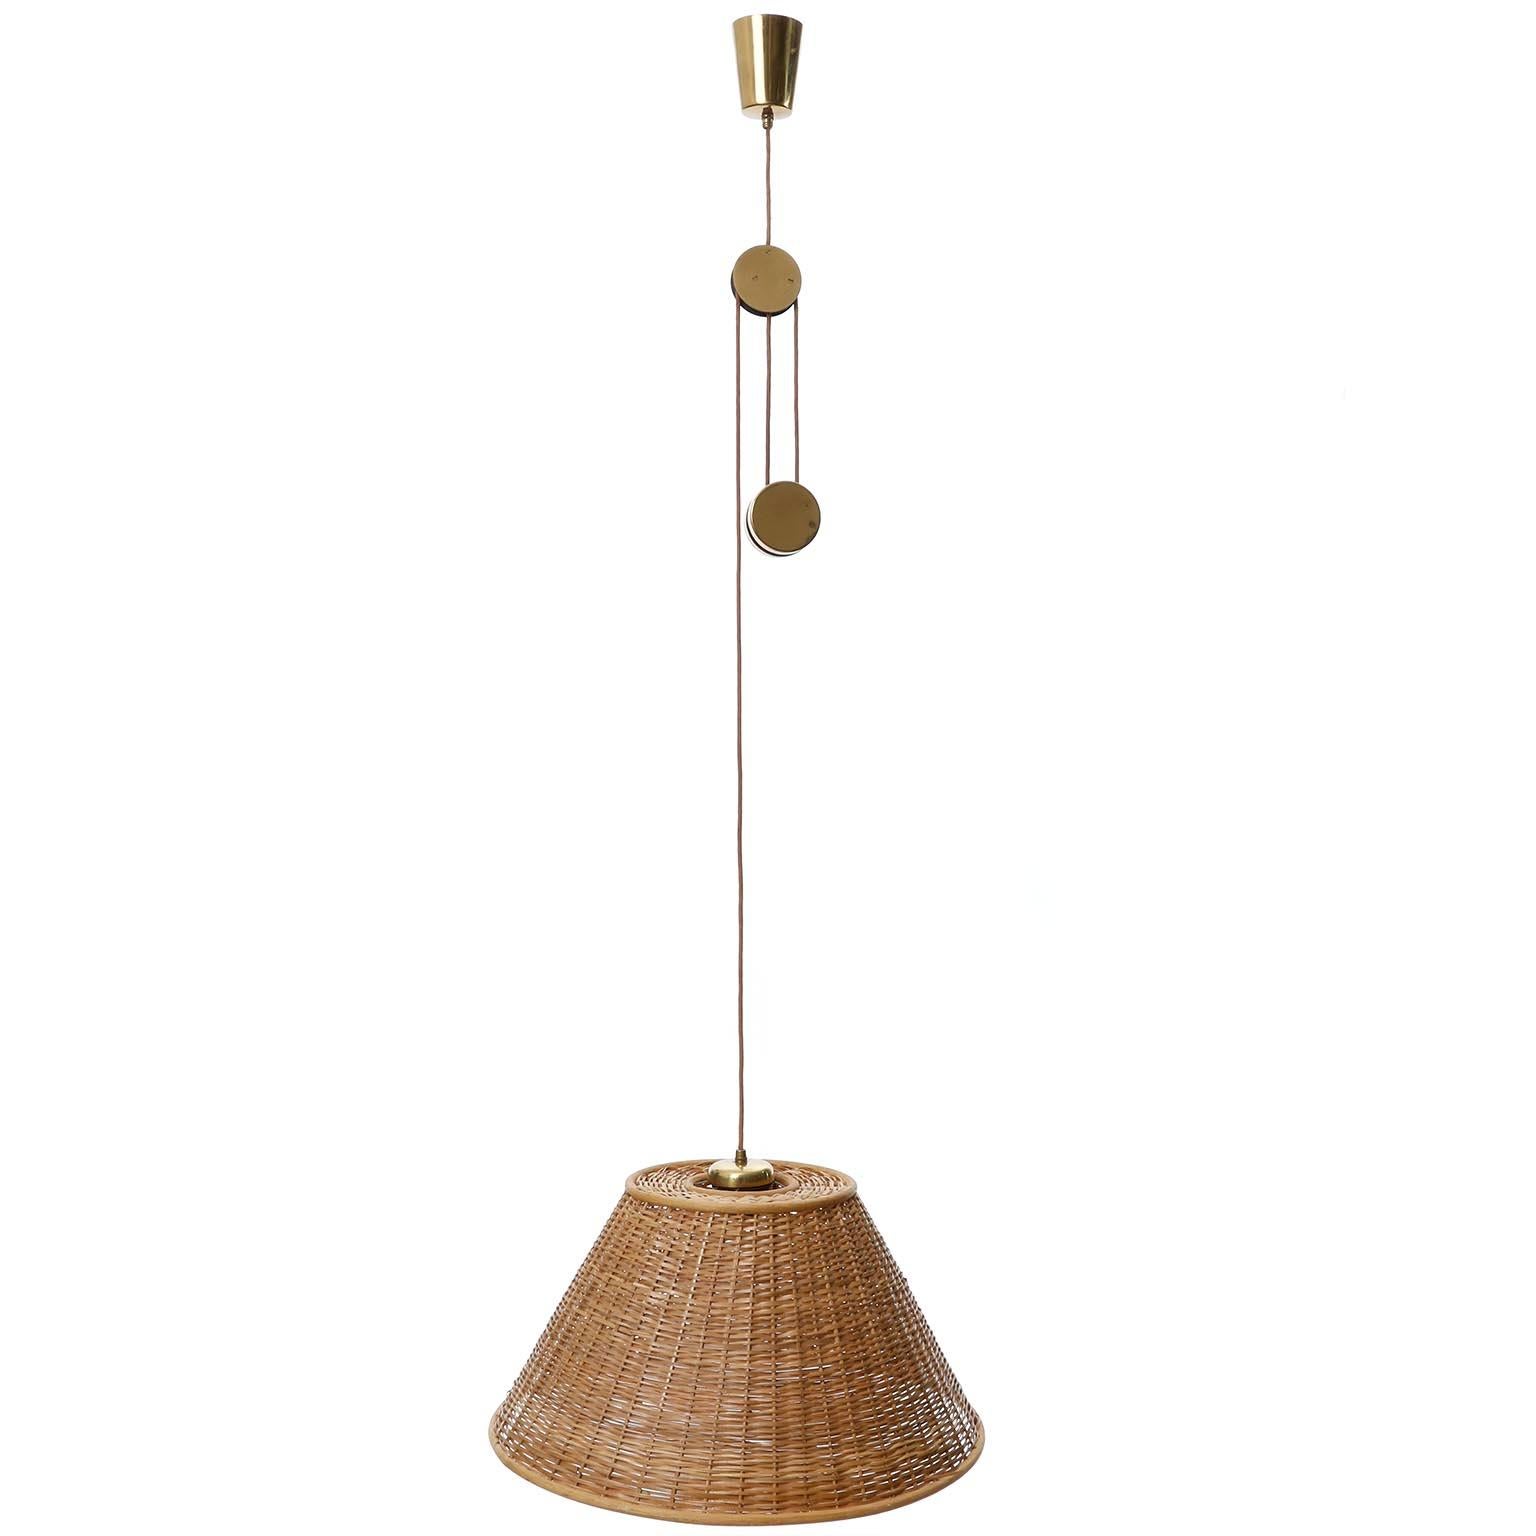 Rare et fantastique lampe suspendue en laiton à hauteur réglable avec abat-jour en osier modèle 'Jo-Jo Zug' no. 2505 par J.AT&T. Kalmar a été fabriqué au milieu du siècle dans les années 1950.
Le luminaire s'inspire d'un design de Josef Frank datant